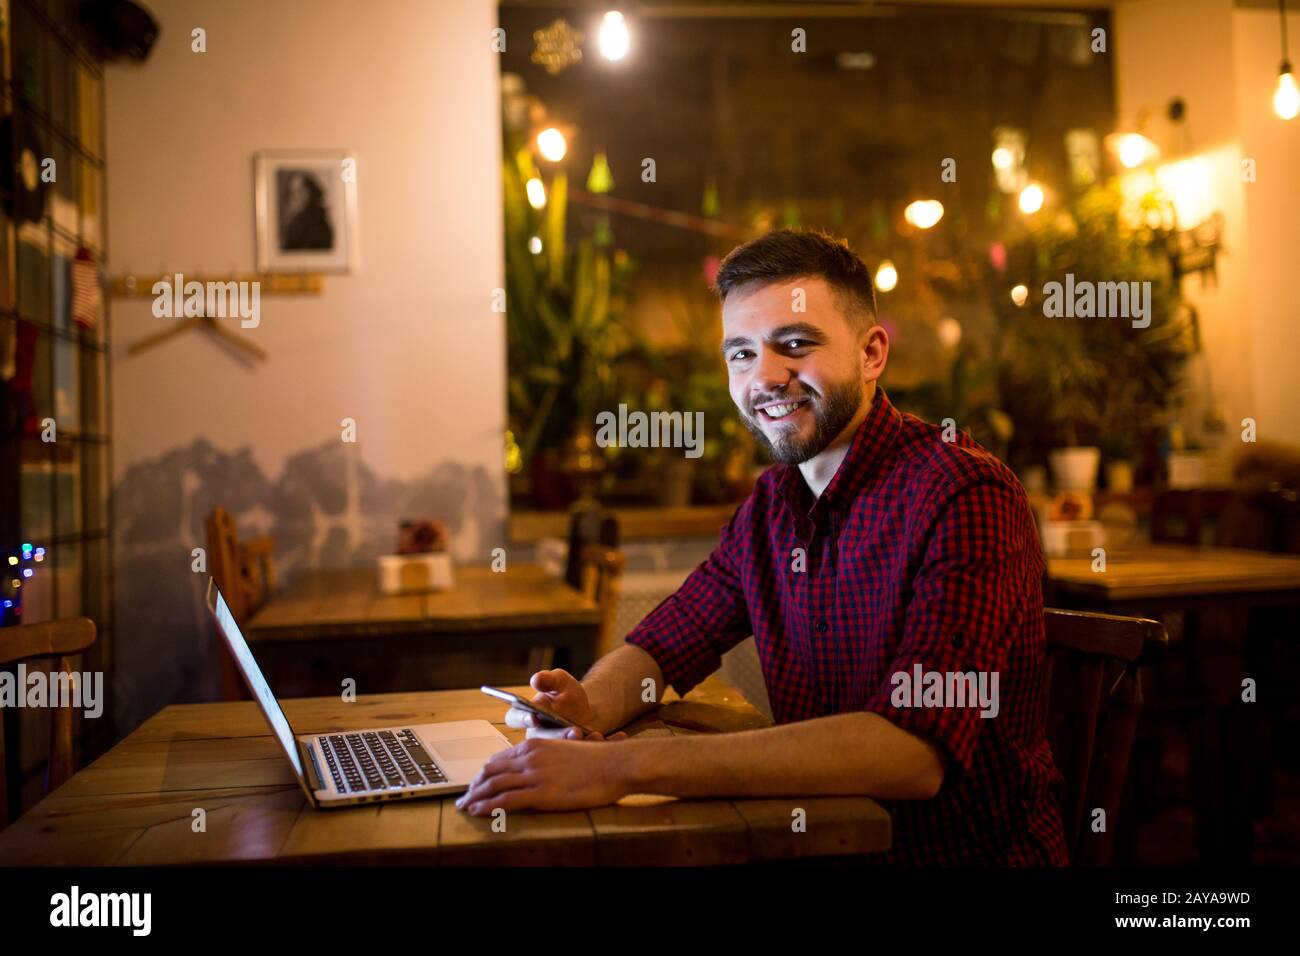 Ein junger, gutaussehender kaukasischer Mann mit Bart und tollem Lächeln in rotem Hemd arbeitet hinter dem Laptop, der auf der Holzlasche sitzt Stockfoto